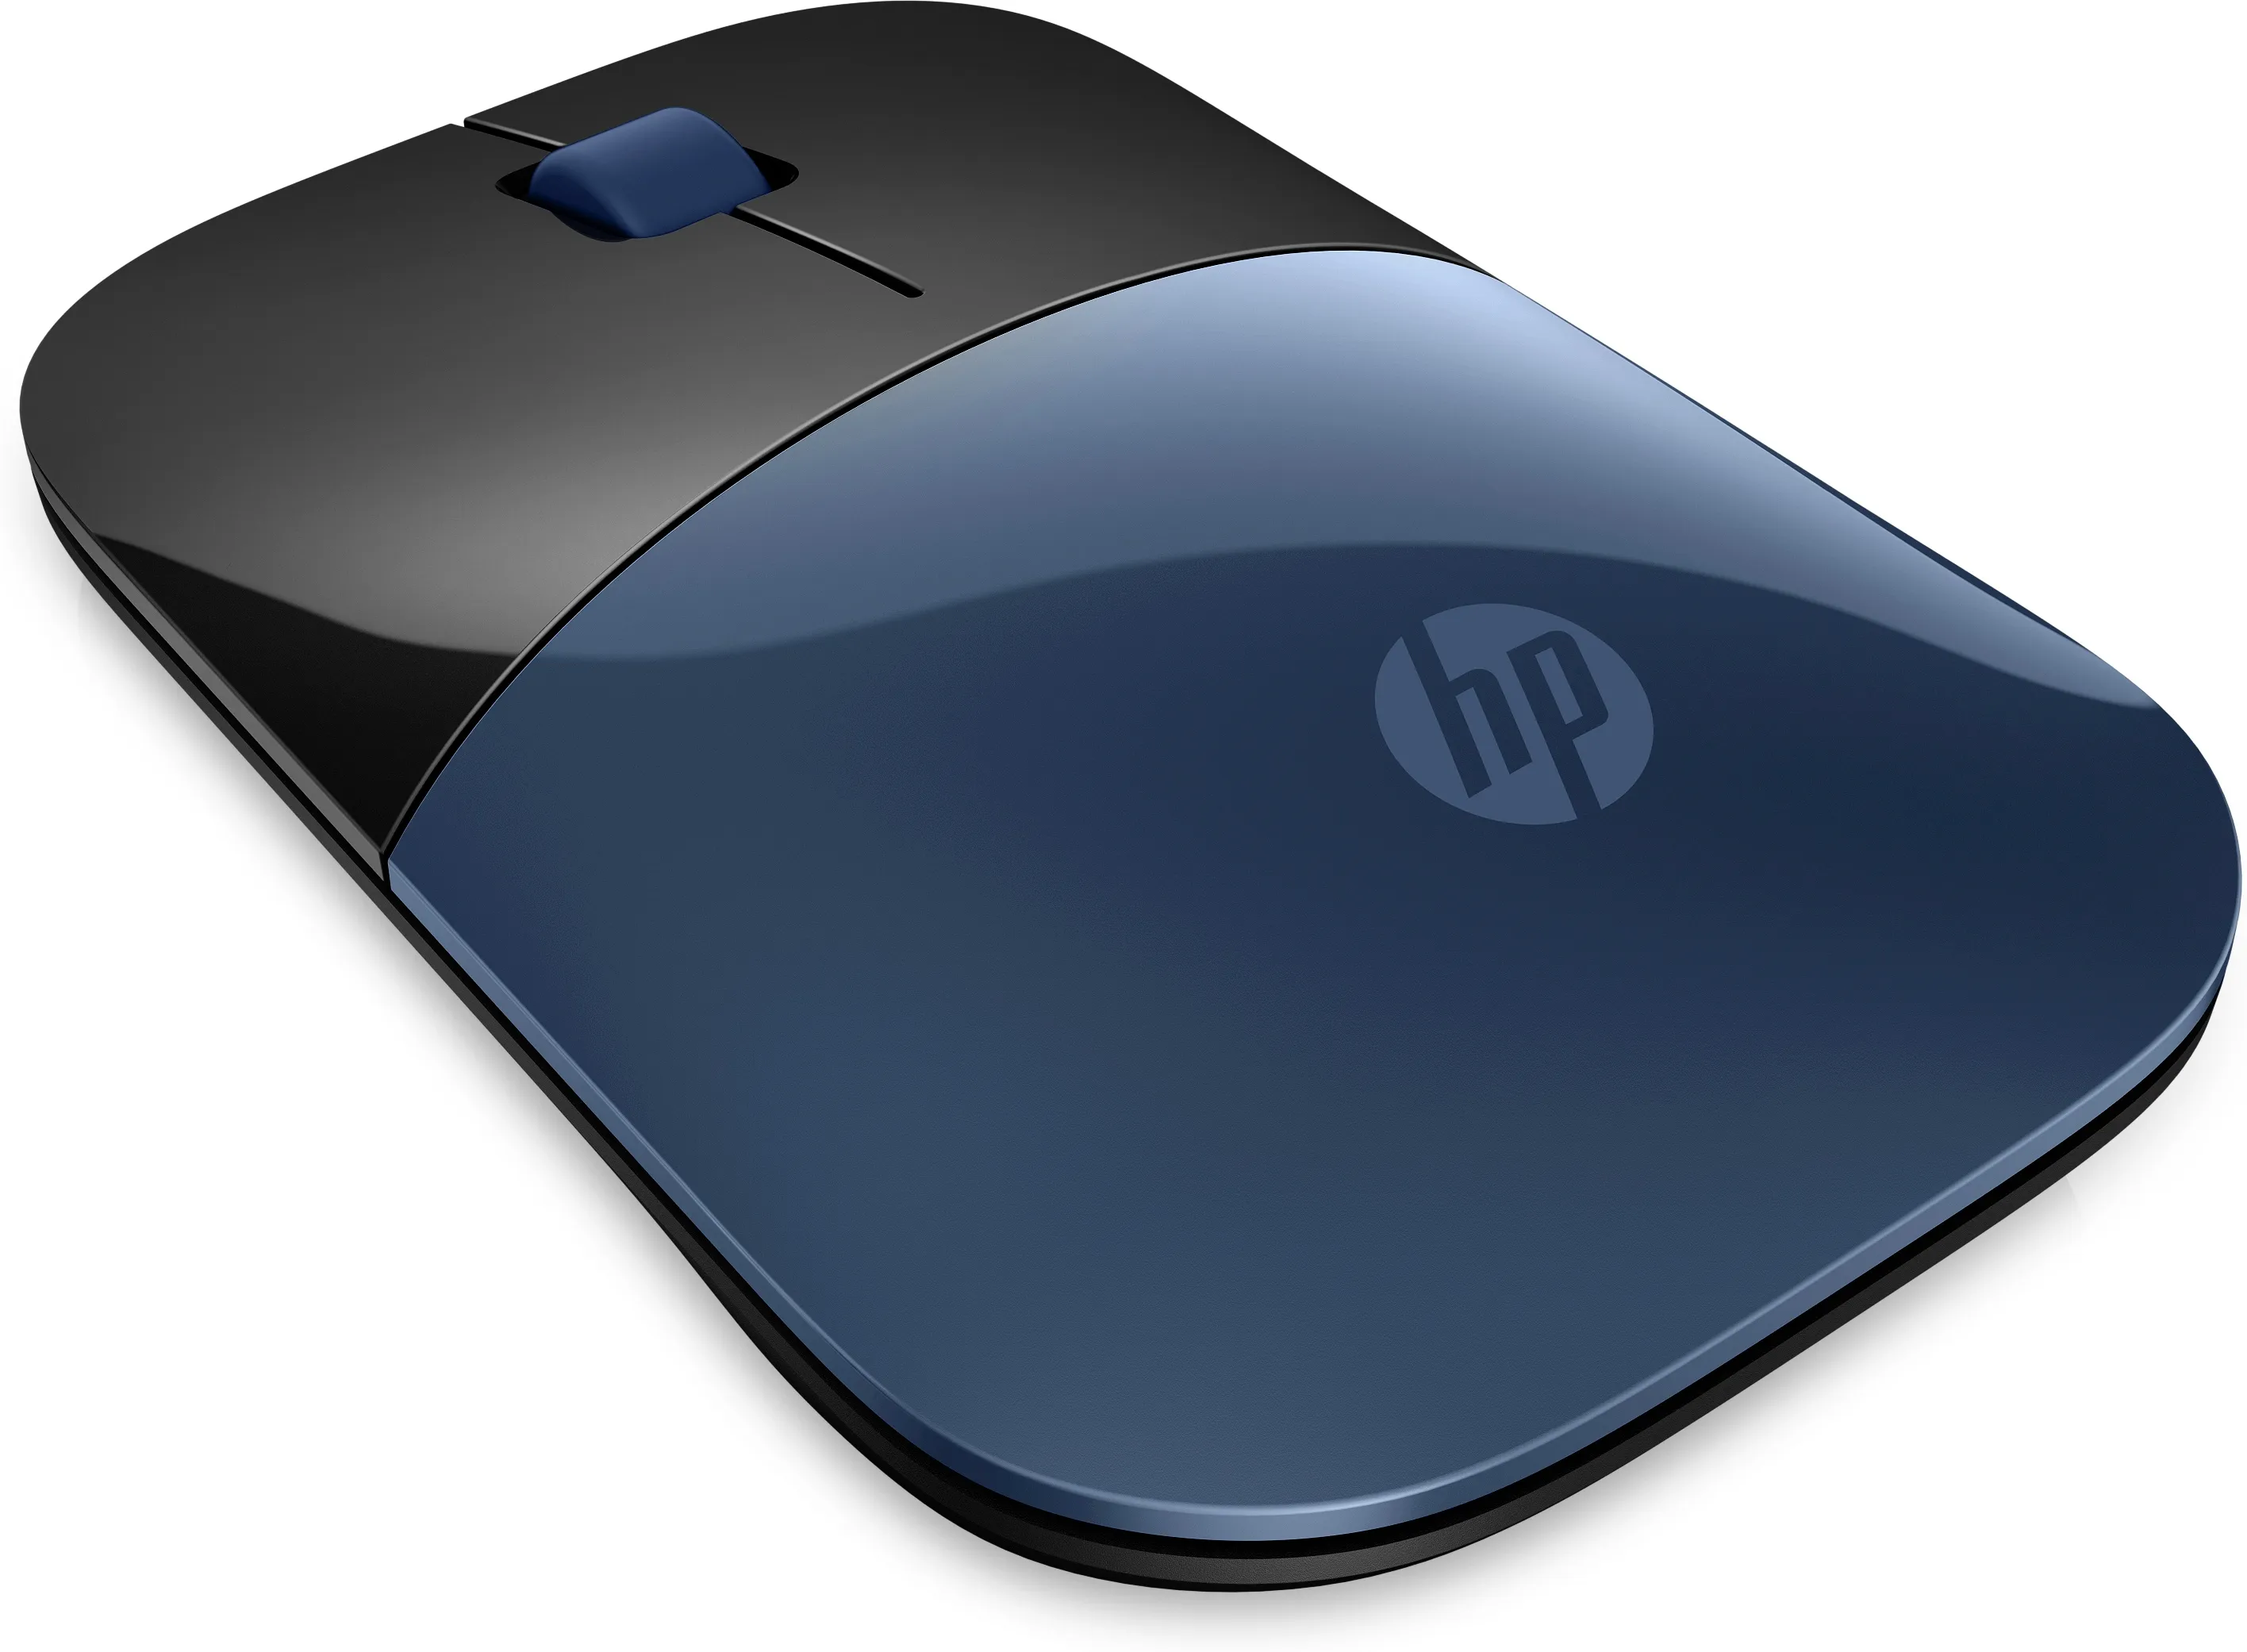 Achat HP Z3700 Wireless Mouse - Lumiere Blue sur hello RSE - visuel 7